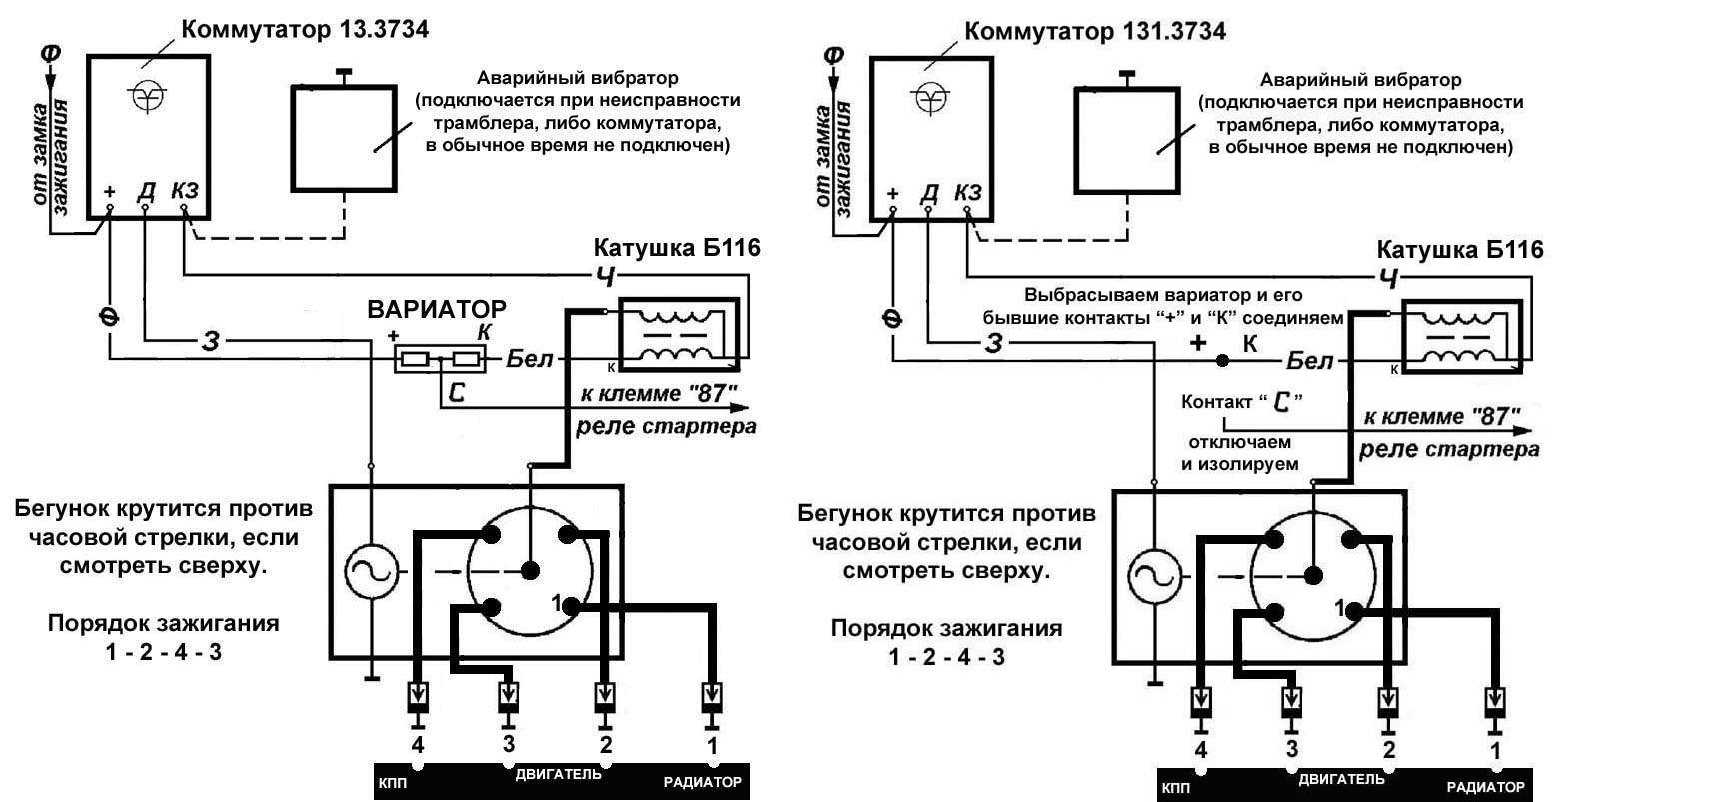 Как проверить коммутатор на уаз буханка – проверка коммутатора уаз-3151 — автозапчасти ваз — tazovod.ru